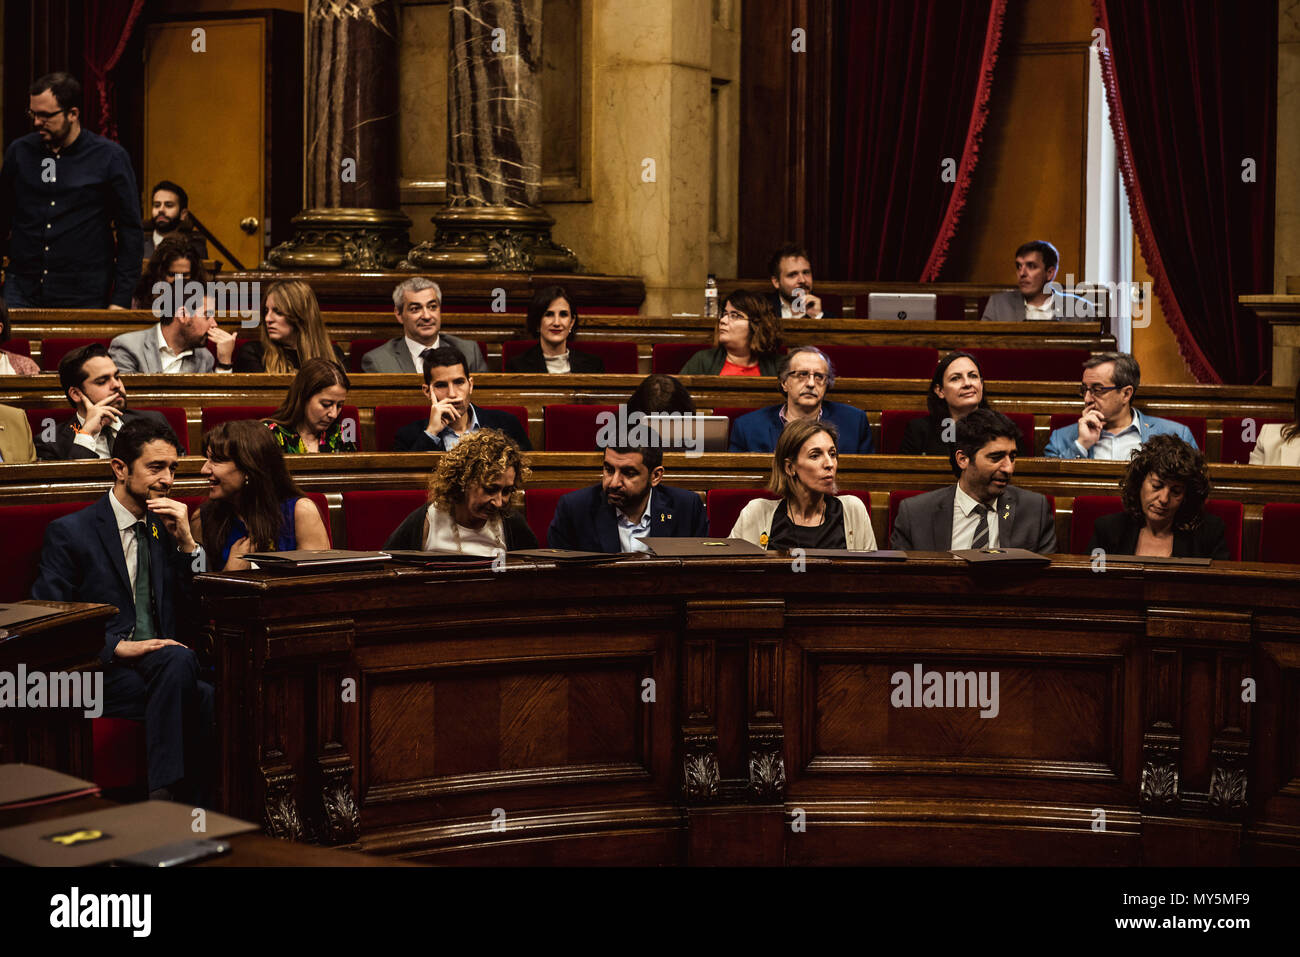 Barcellona, Spagna. 6 Giugno 2018: i membri della recente costruzione Governo Catalano riempire la prima fila nella sala plenaria durante una sessione al Parlamento catalano Credito: Matthias Oesterle/Alamy Live News Foto Stock